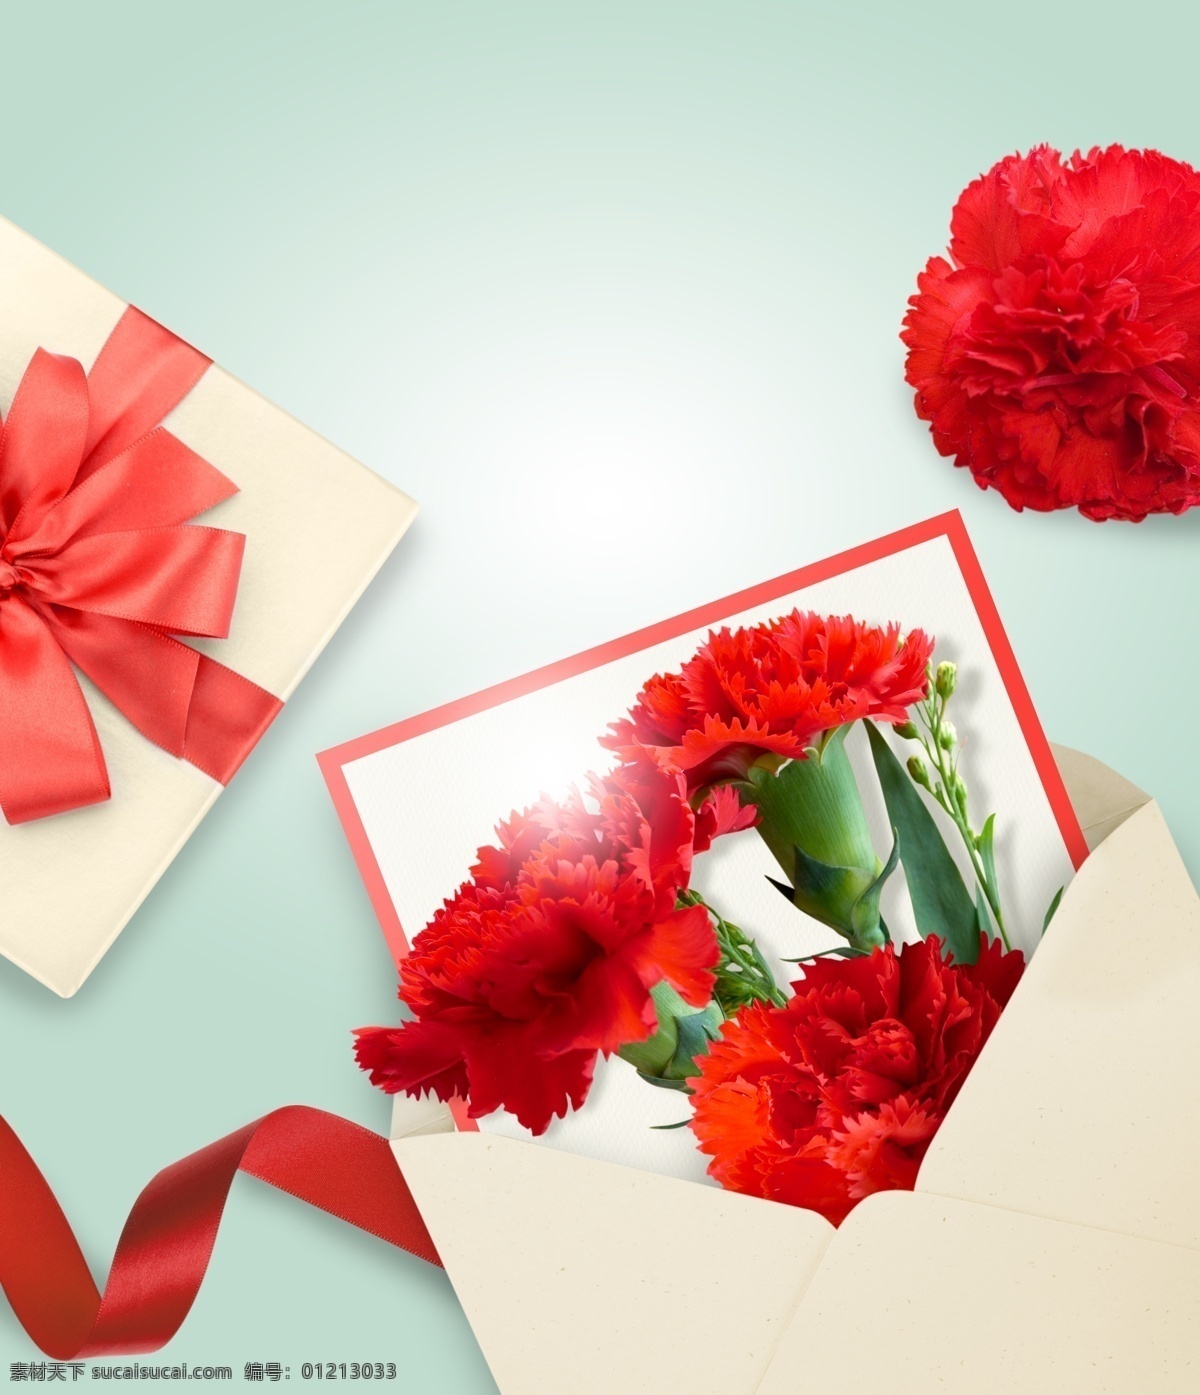 父亲节元素 父亲节素材 父亲节礼物 父亲节设计 红色康乃馨 鲜花 红色花朵 礼物 礼物盒 丝带 卡片信封 父亲节 生活百科 休闲娱乐